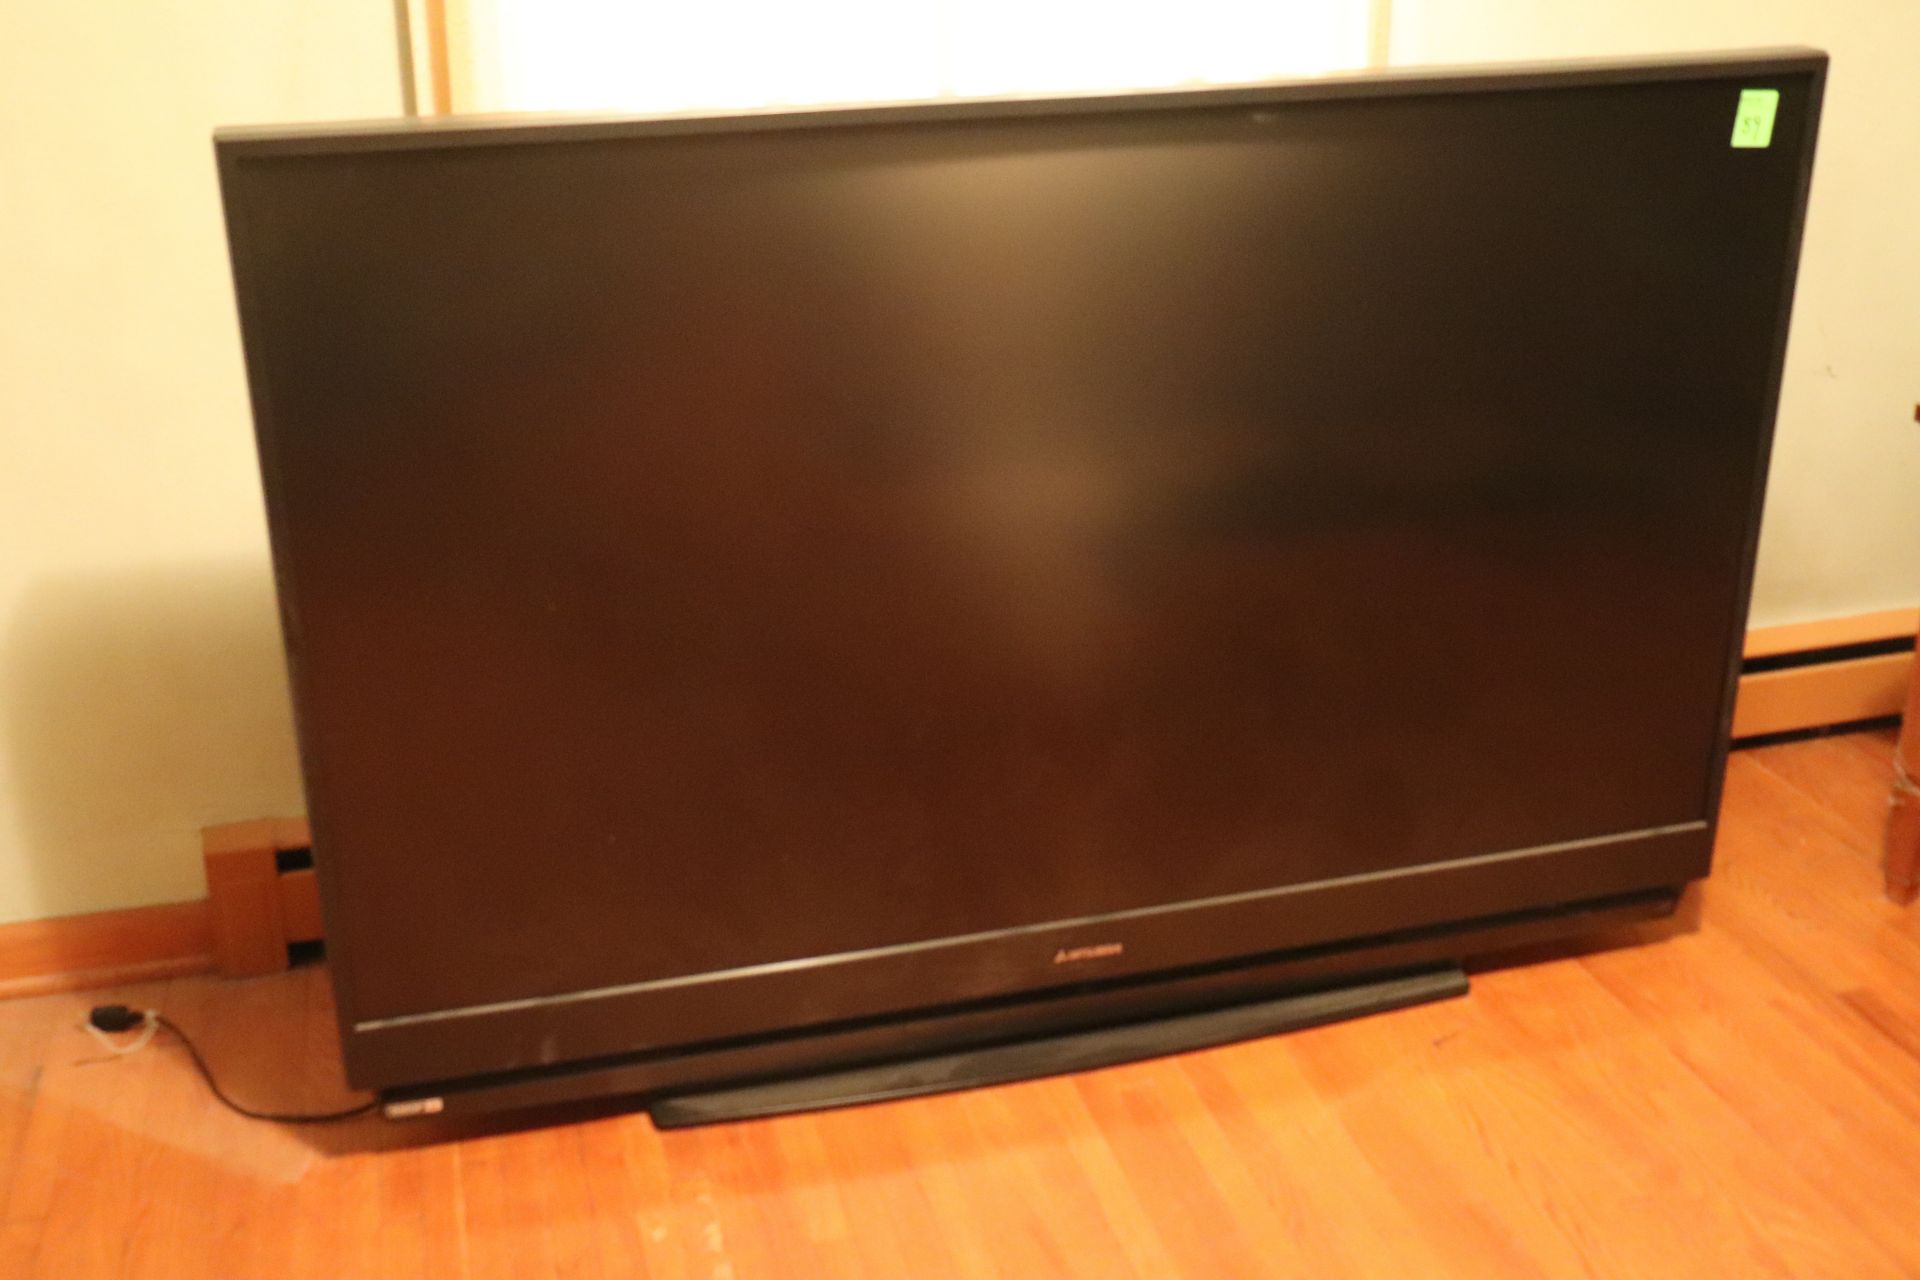 62" Mitsubishi flat screen television, 1080P